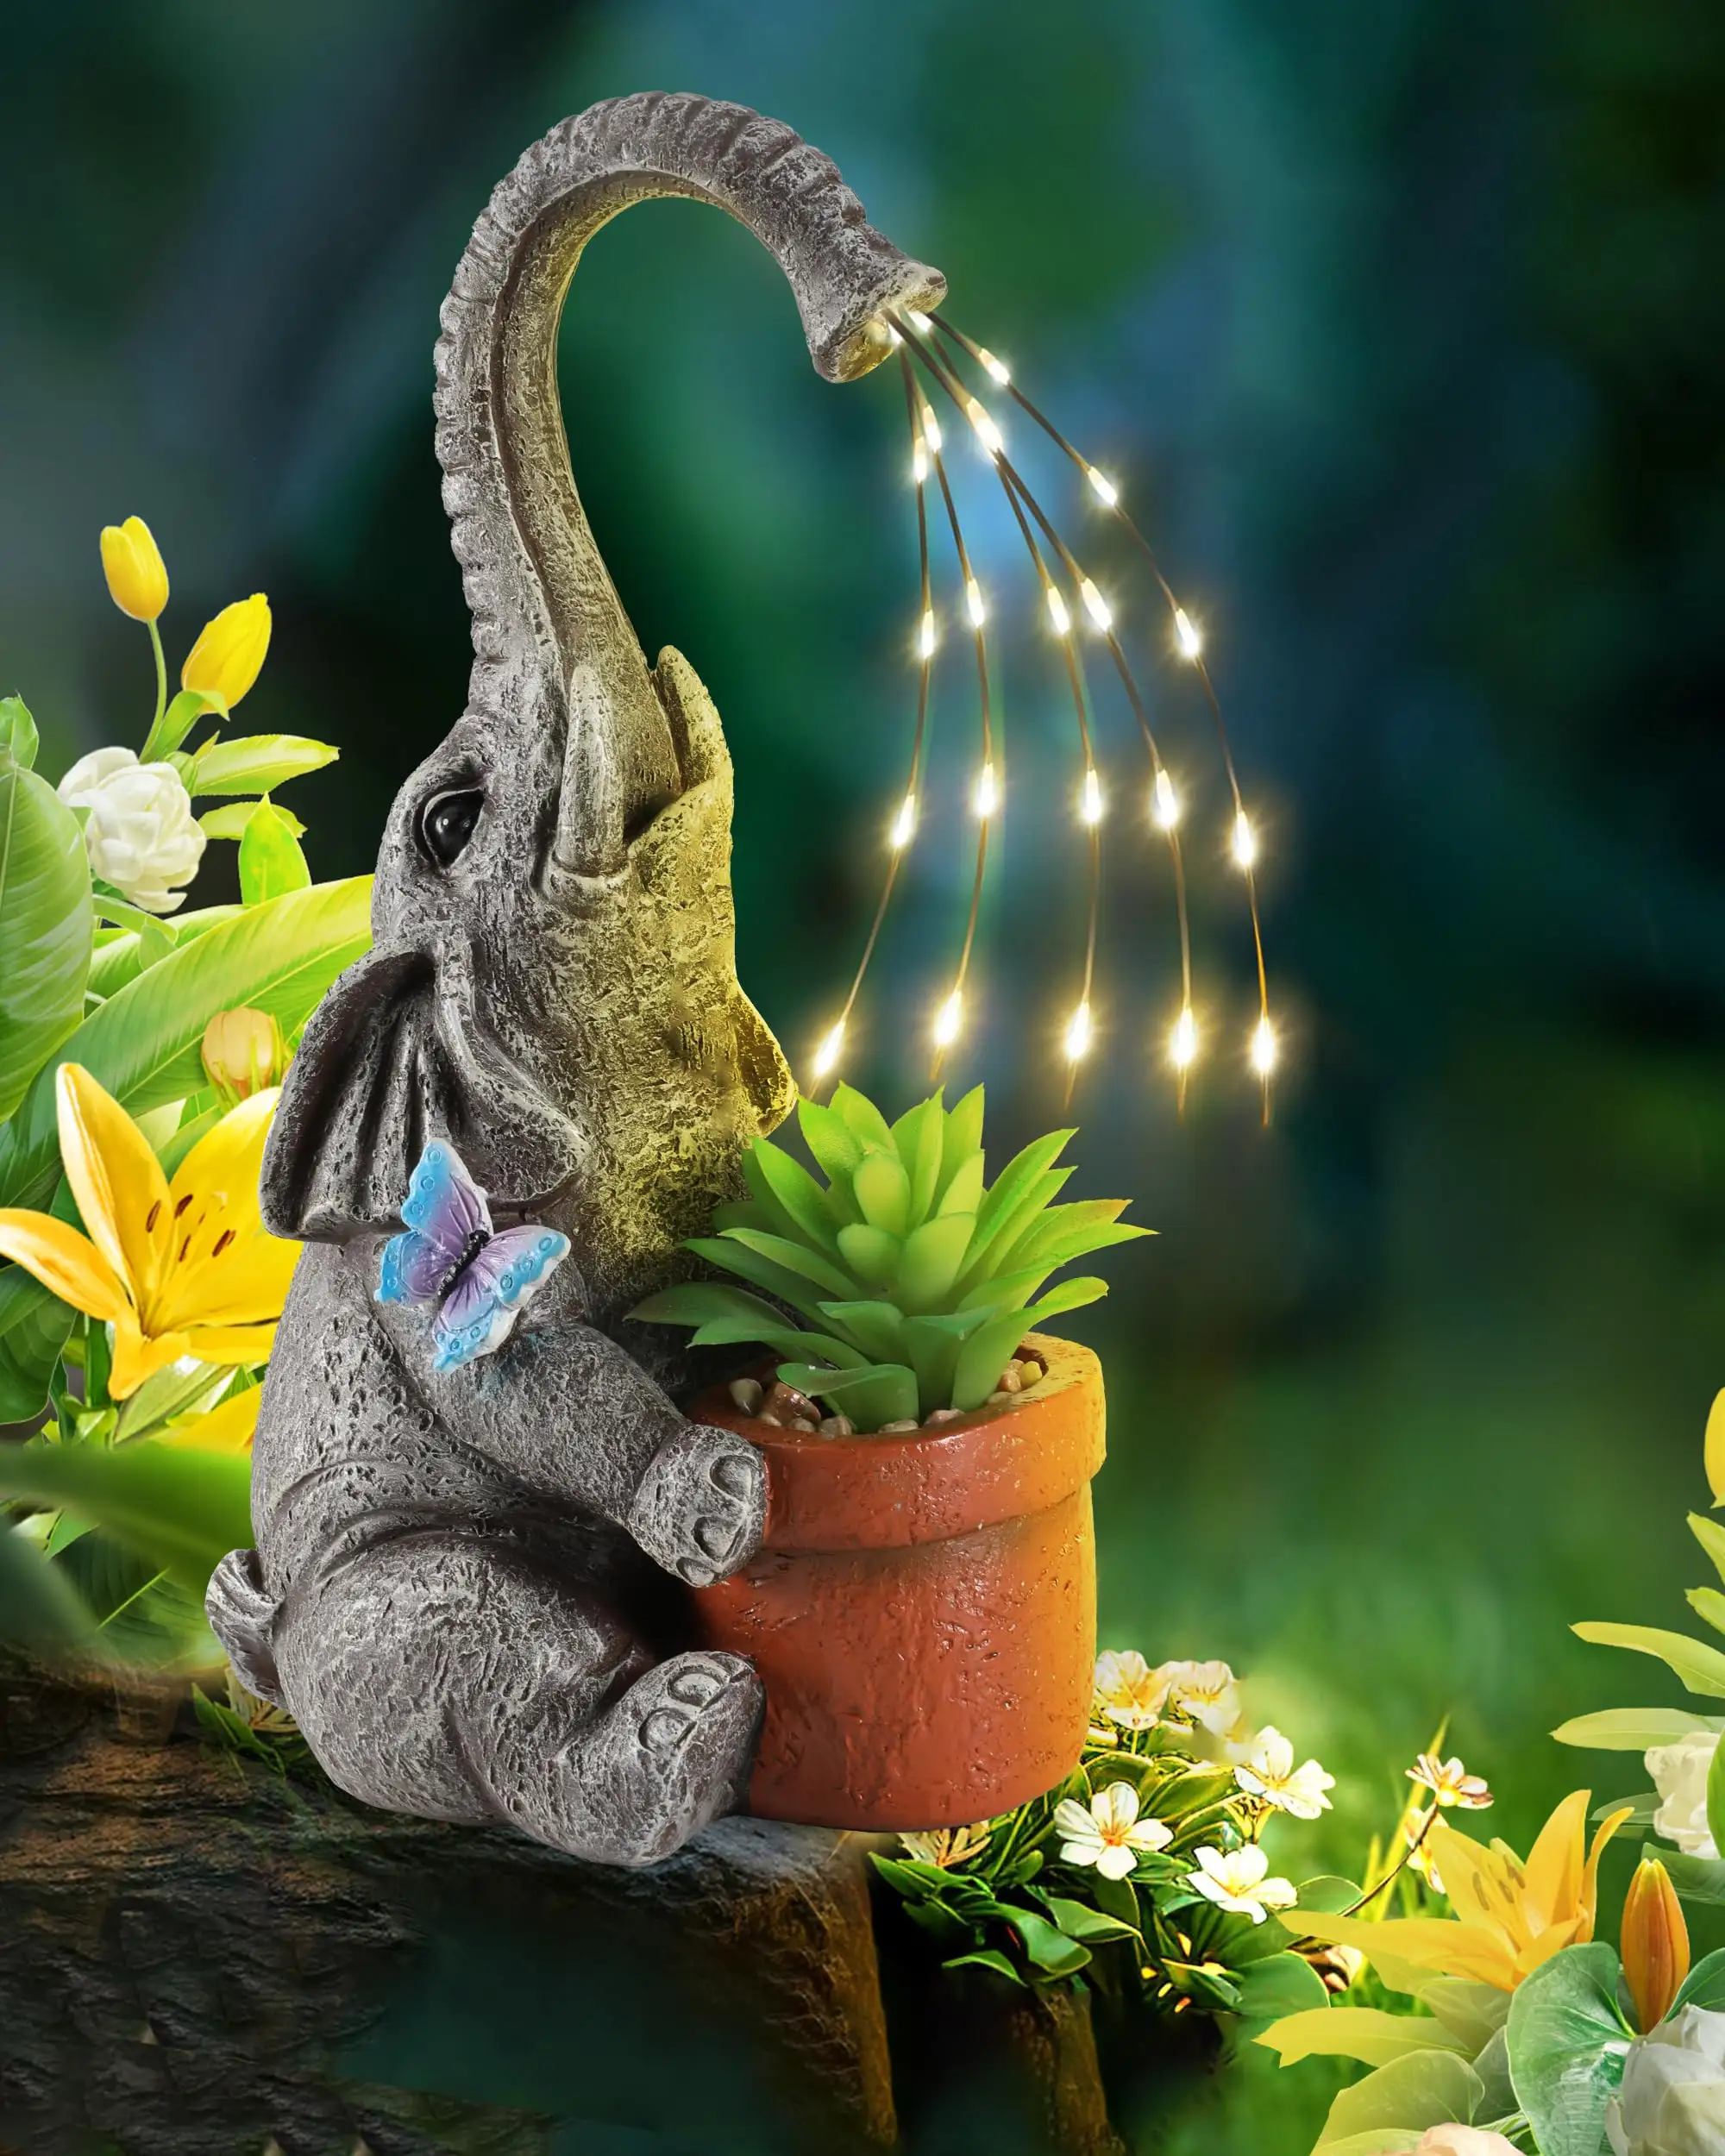 Grosir Resin dekorasi taman halaman rumput ornamen lampu surya gajah patung dengan Pot tanaman sukulen patung